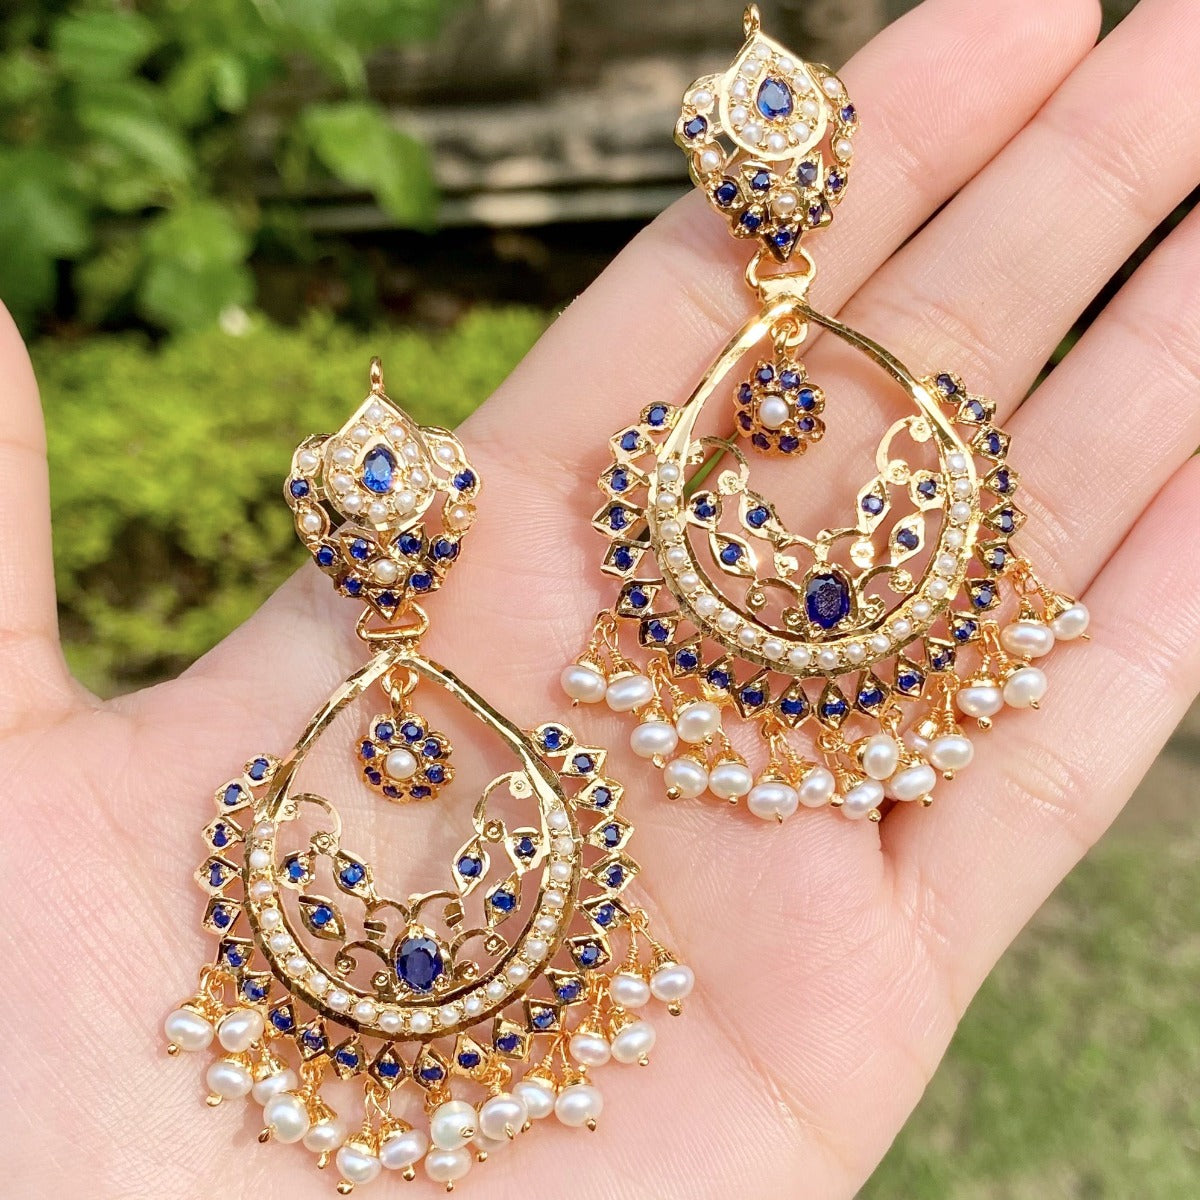 tear drop shaped chandbali earrings